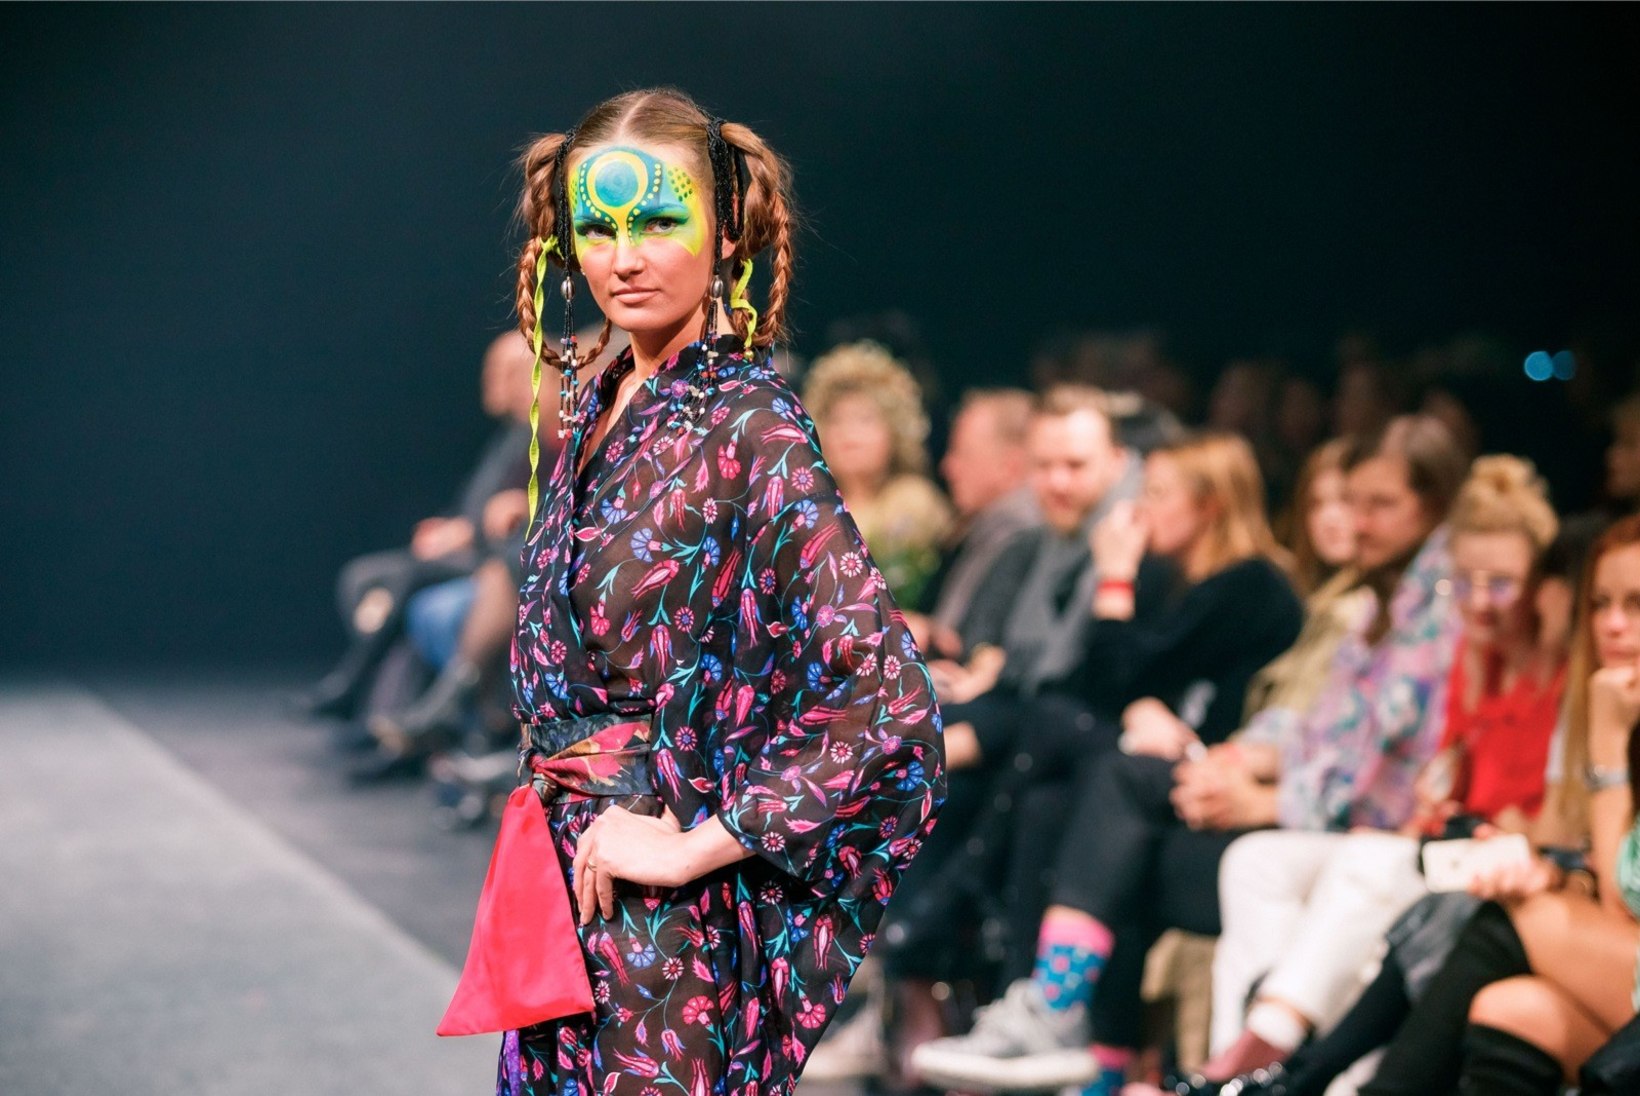 VAATA JÄRELE | Tallinn Fashion Weeki moeetendused lisavad reede õhtule vürtsi!